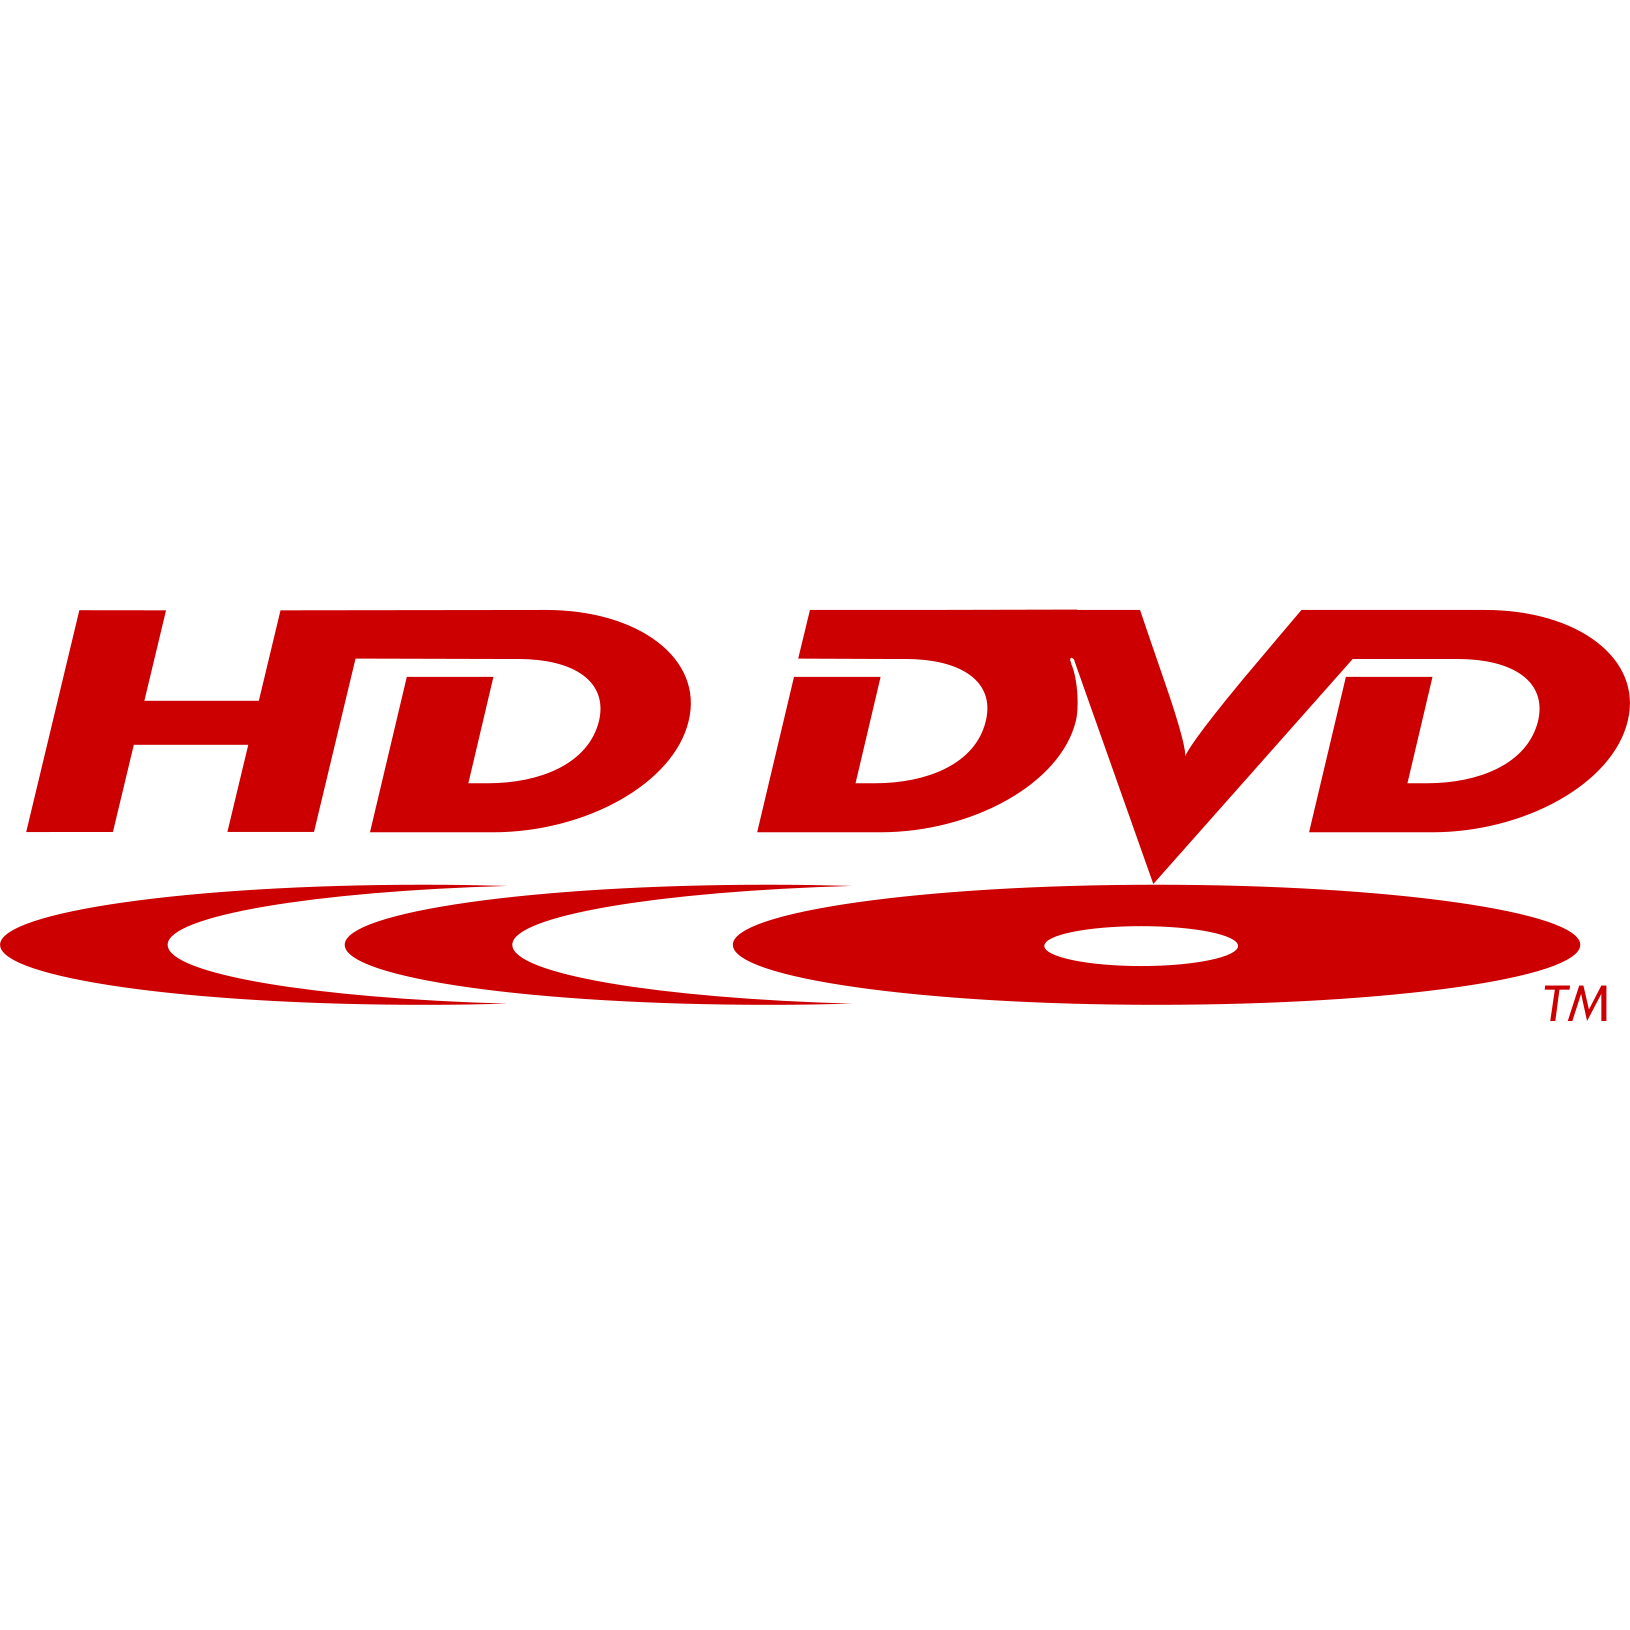 PC DVD Logo - Dvd Logos